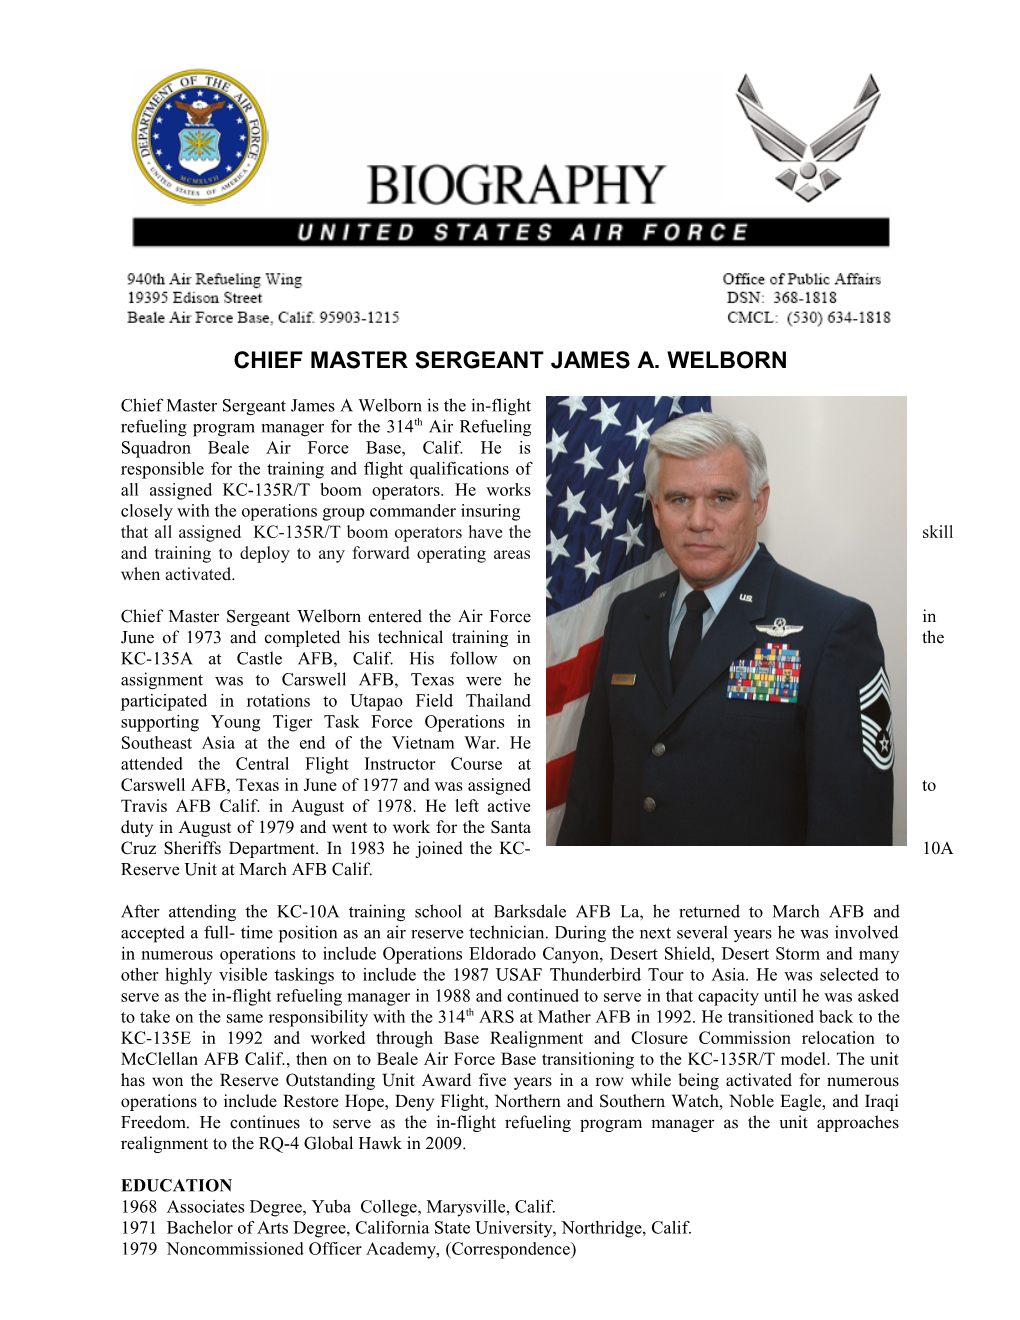 Chiefmastersergeant James A. Welborn